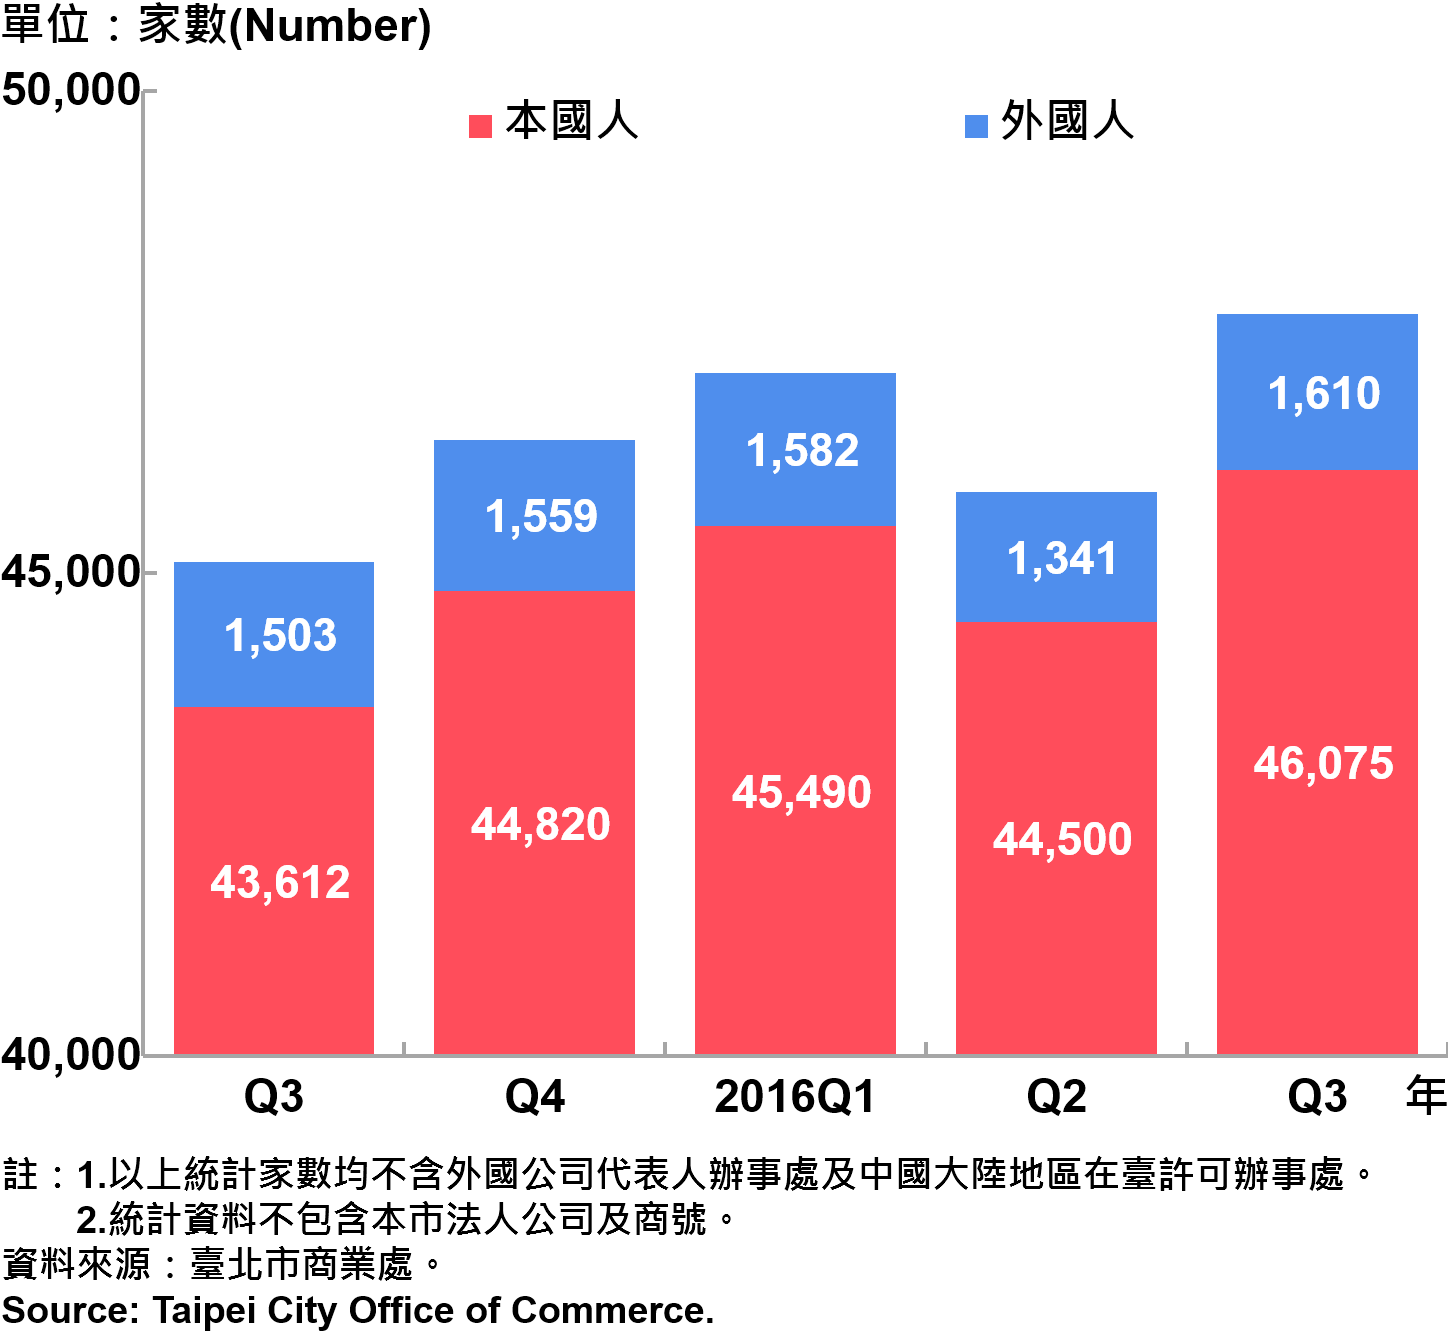 圖21、臺北市公司青創負責人為本國人與外國人分布情形—依現存家數—2016Q3 Responsible Person of Newly Registered Companies In Taipei by Nationality - Number of Current —2016Q3